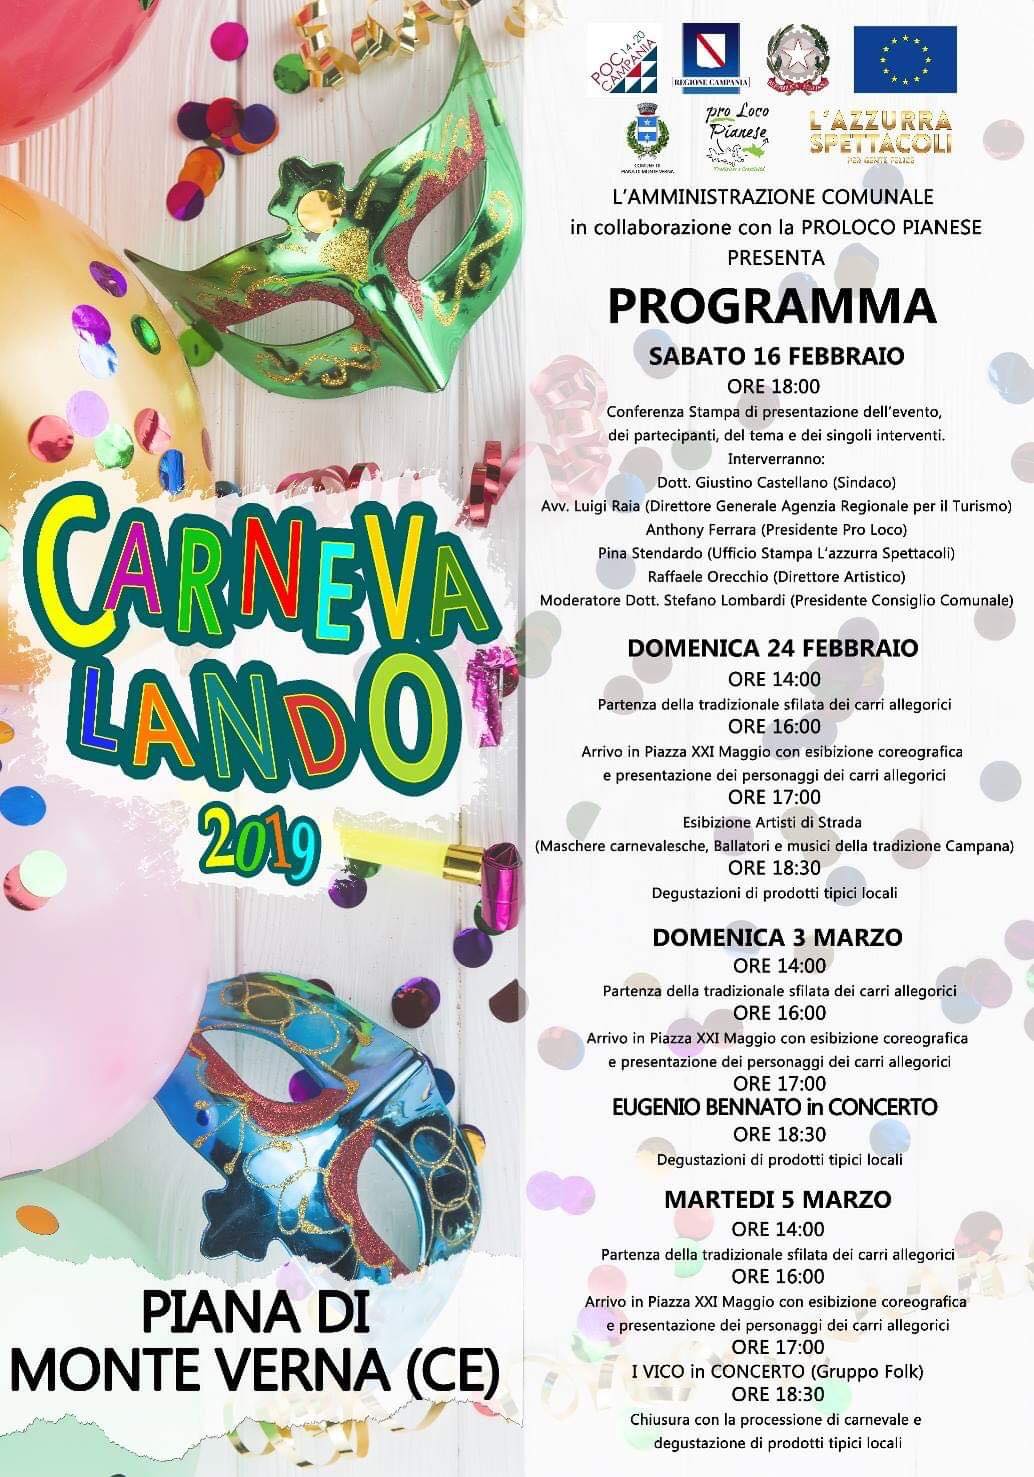 Carnevalando 2019, carri allegorici, musica e degustazioni a Piana Di Monte Verna